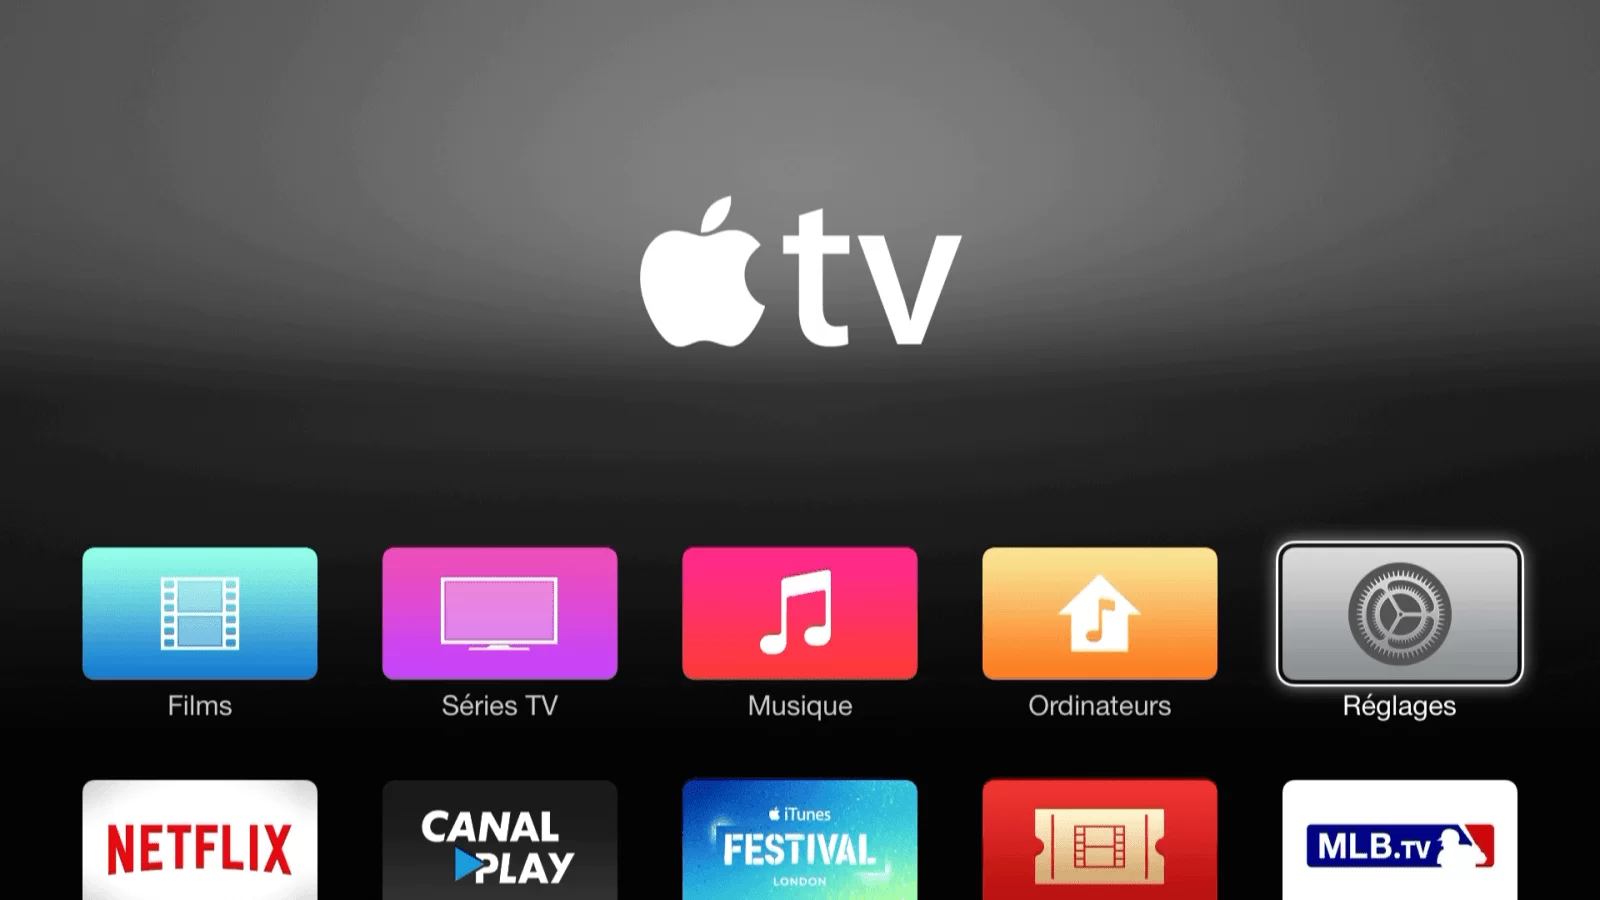 How to Restart App on Apple TV